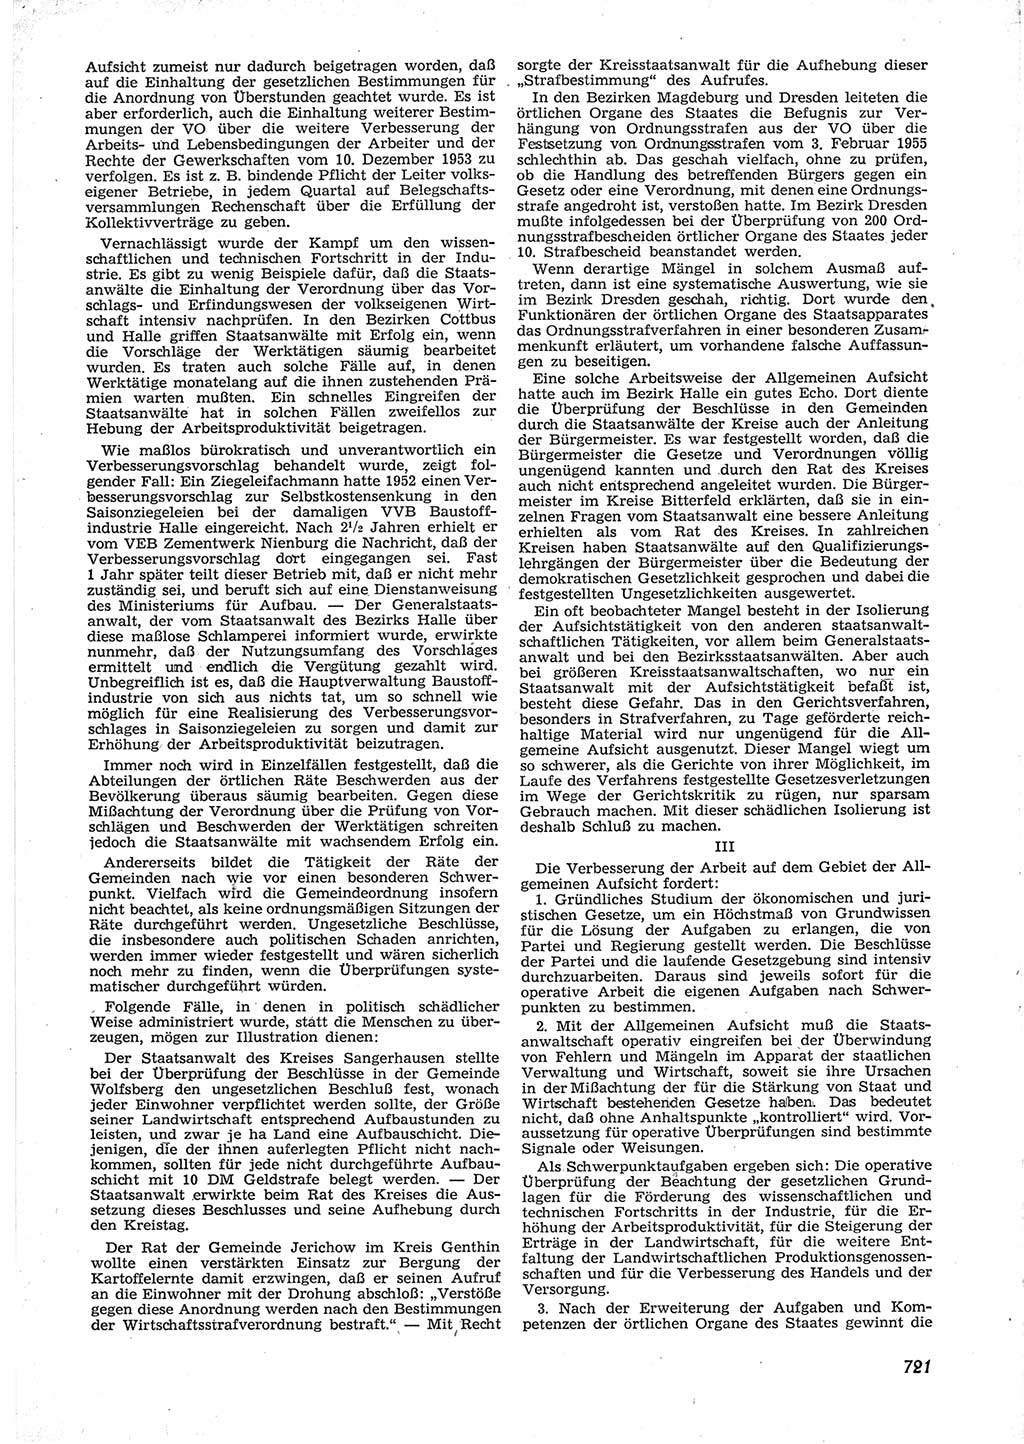 Neue Justiz (NJ), Zeitschrift für Recht und Rechtswissenschaft [Deutsche Demokratische Republik (DDR)], 9. Jahrgang 1955, Seite 721 (NJ DDR 1955, S. 721)